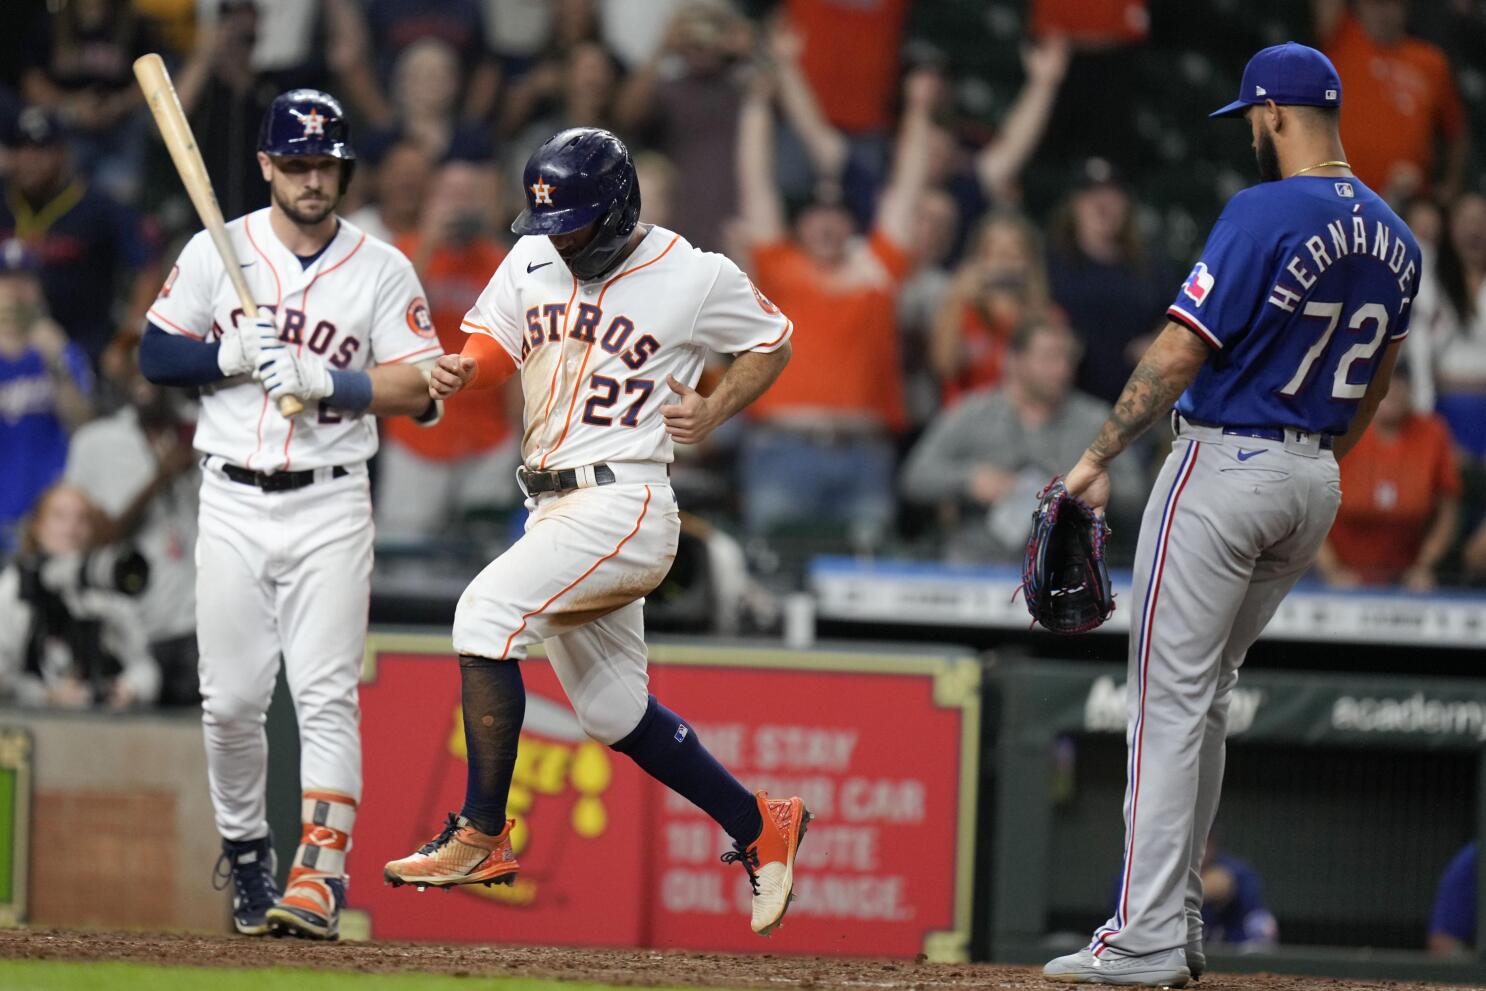 2022 World Series scores, results: Houston Astros take down